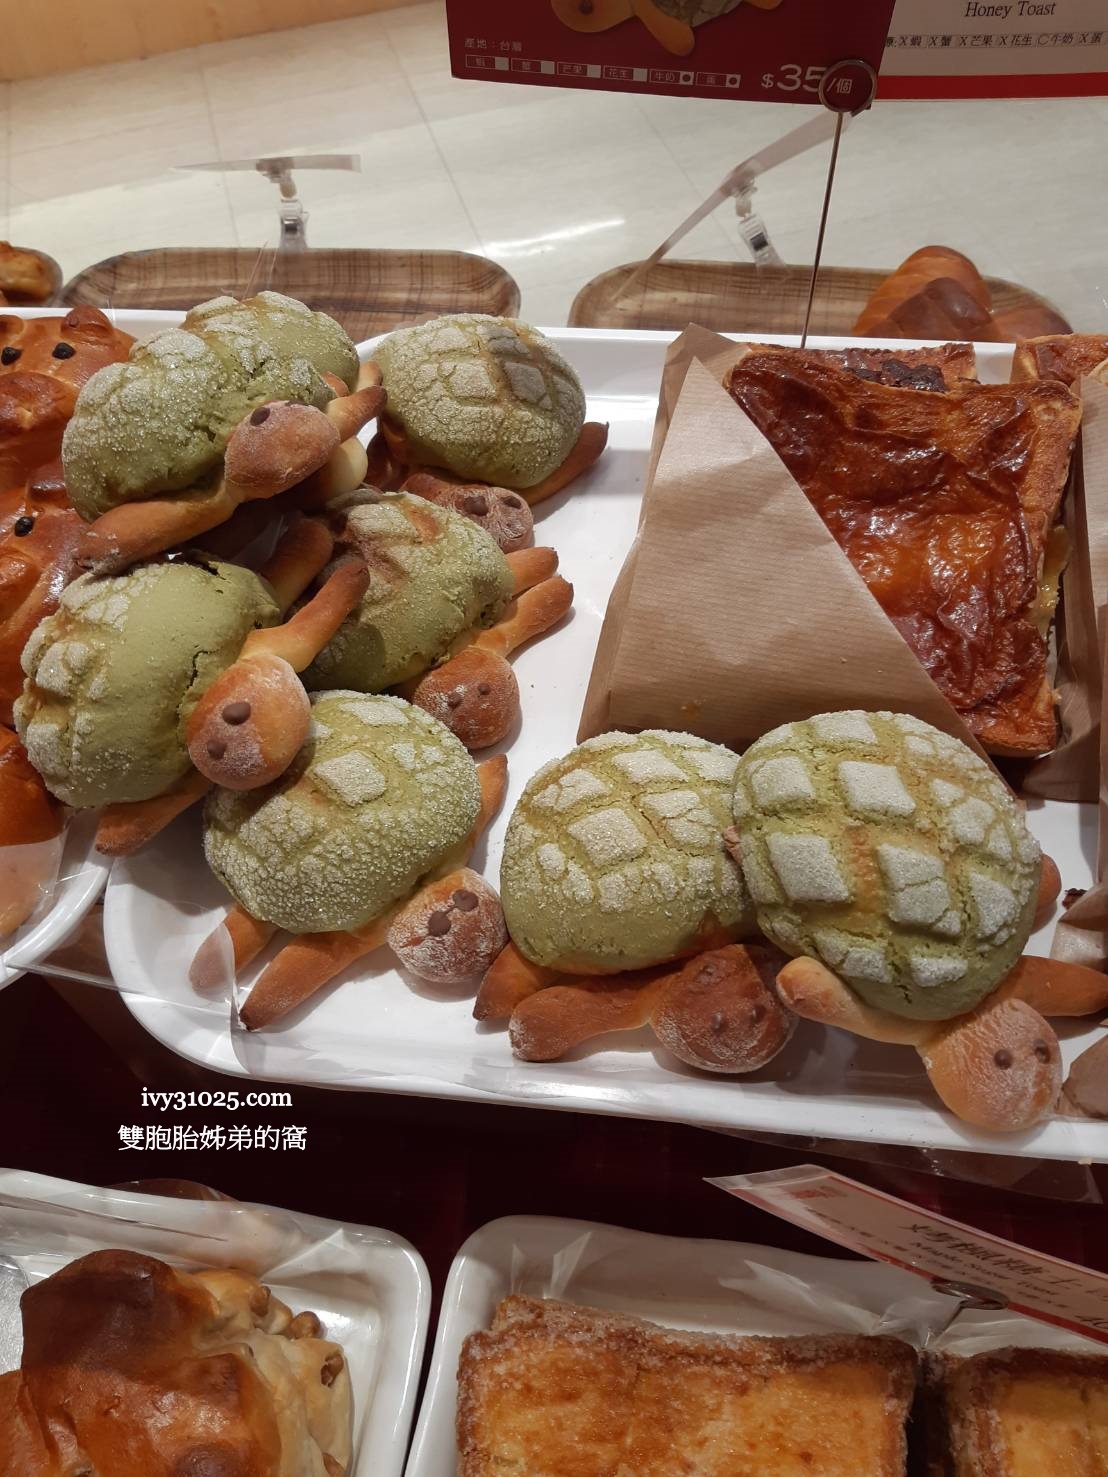 山崎麵包 | 綠茶小烏龜 | 豬寶貝 | Yamazaki | 高雄大魯閣草衙道美食